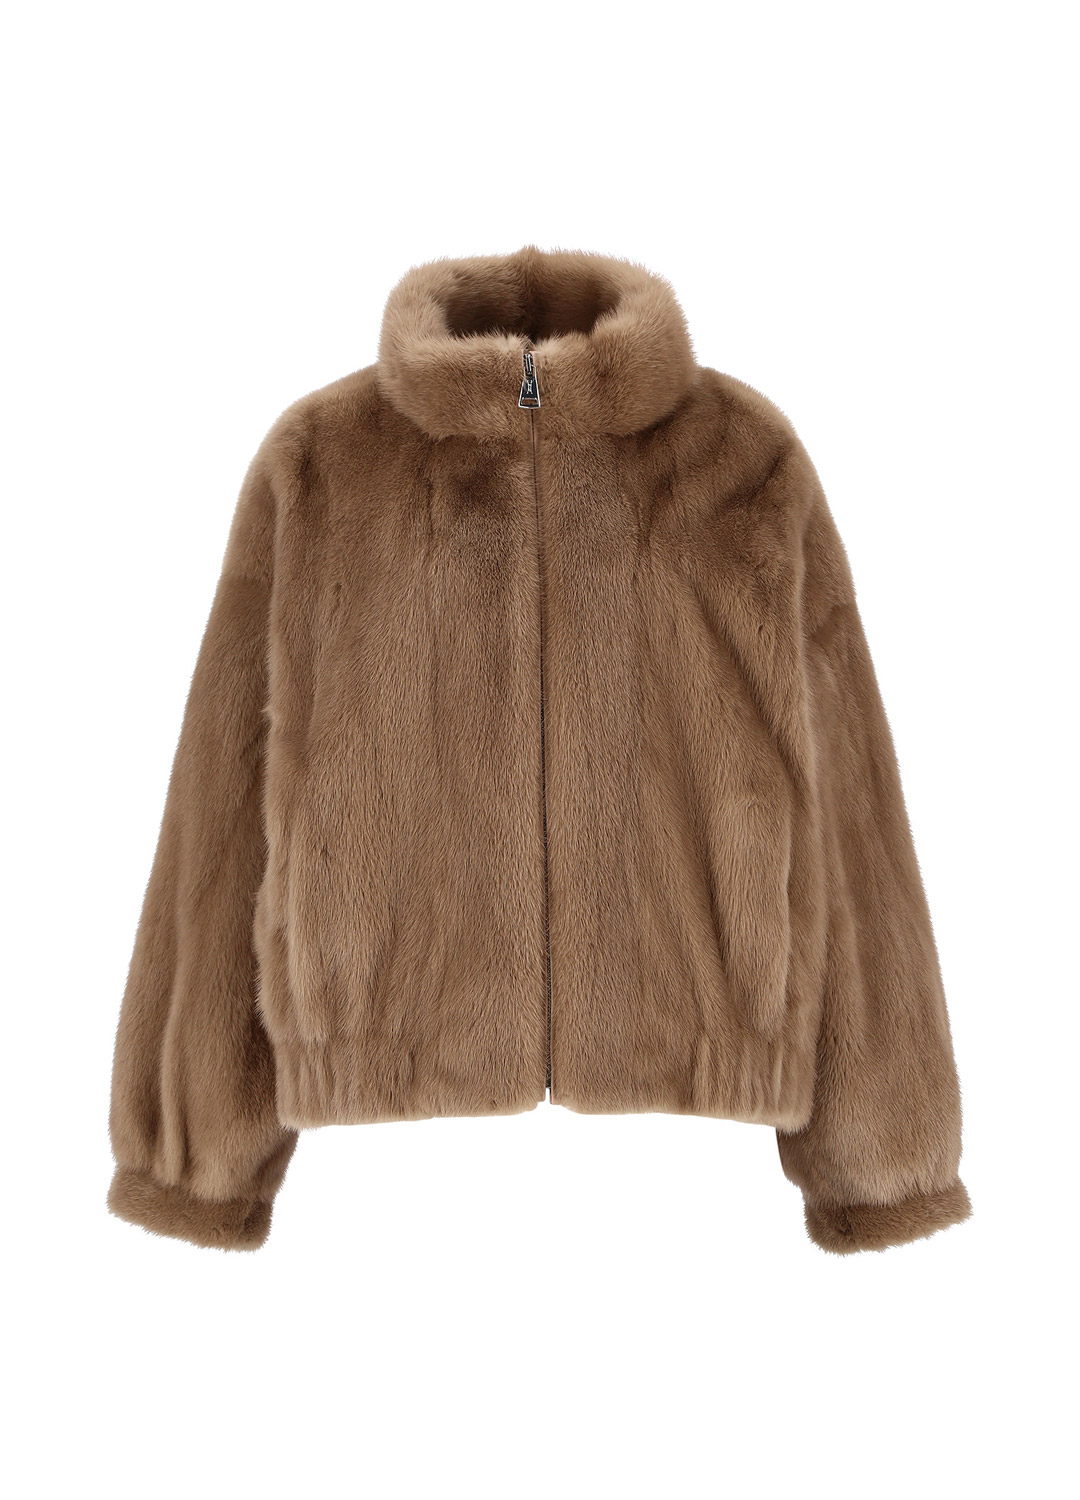 Zip-up mink coat [Milk brown]